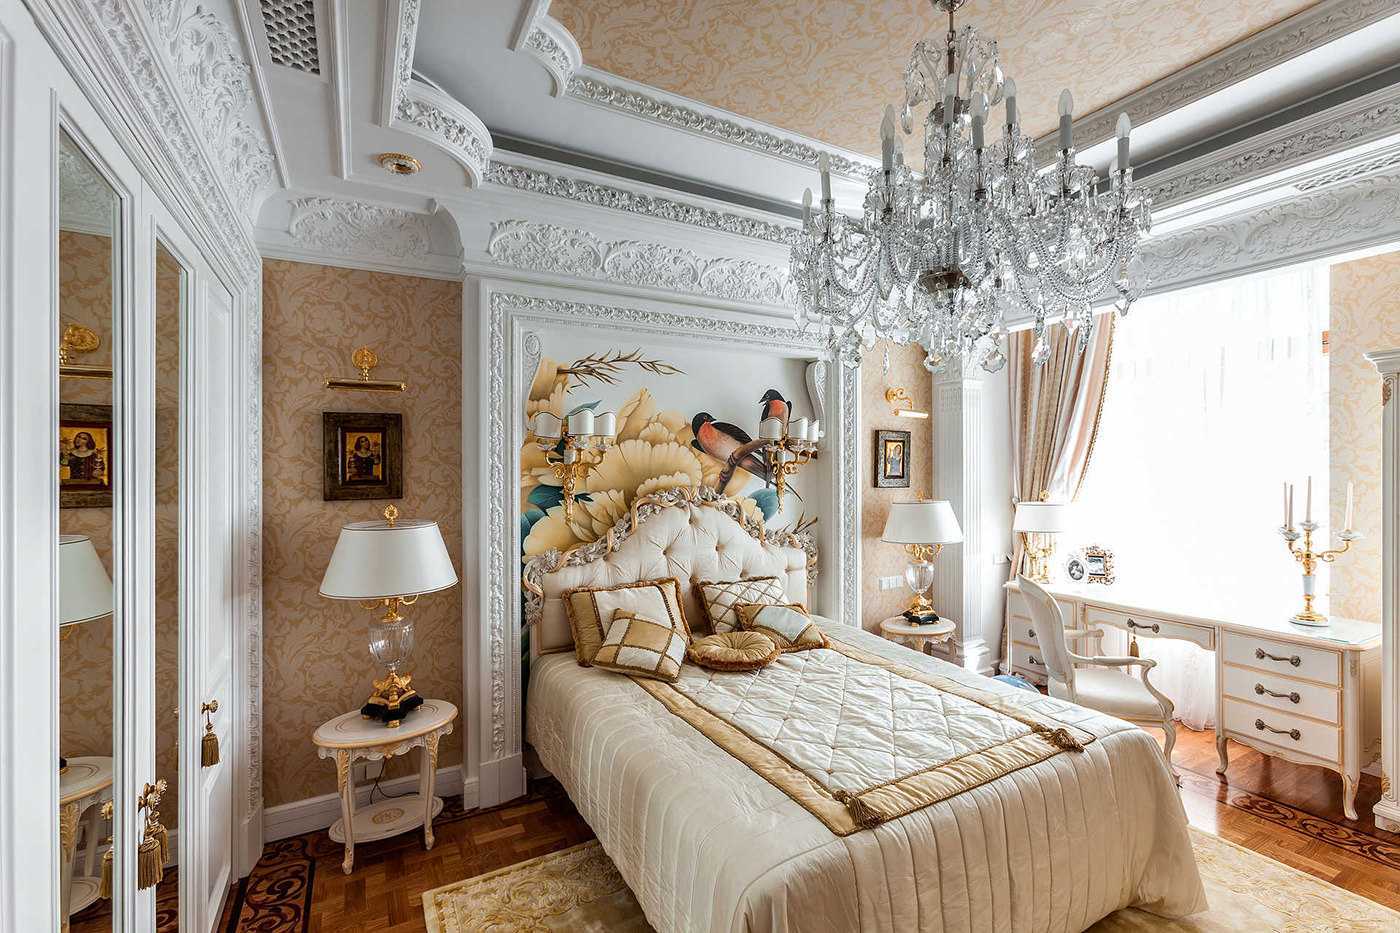 Спальня в классическом стиле (106 фото): классический дизайн спальни, интерьер в квартире среднего класса